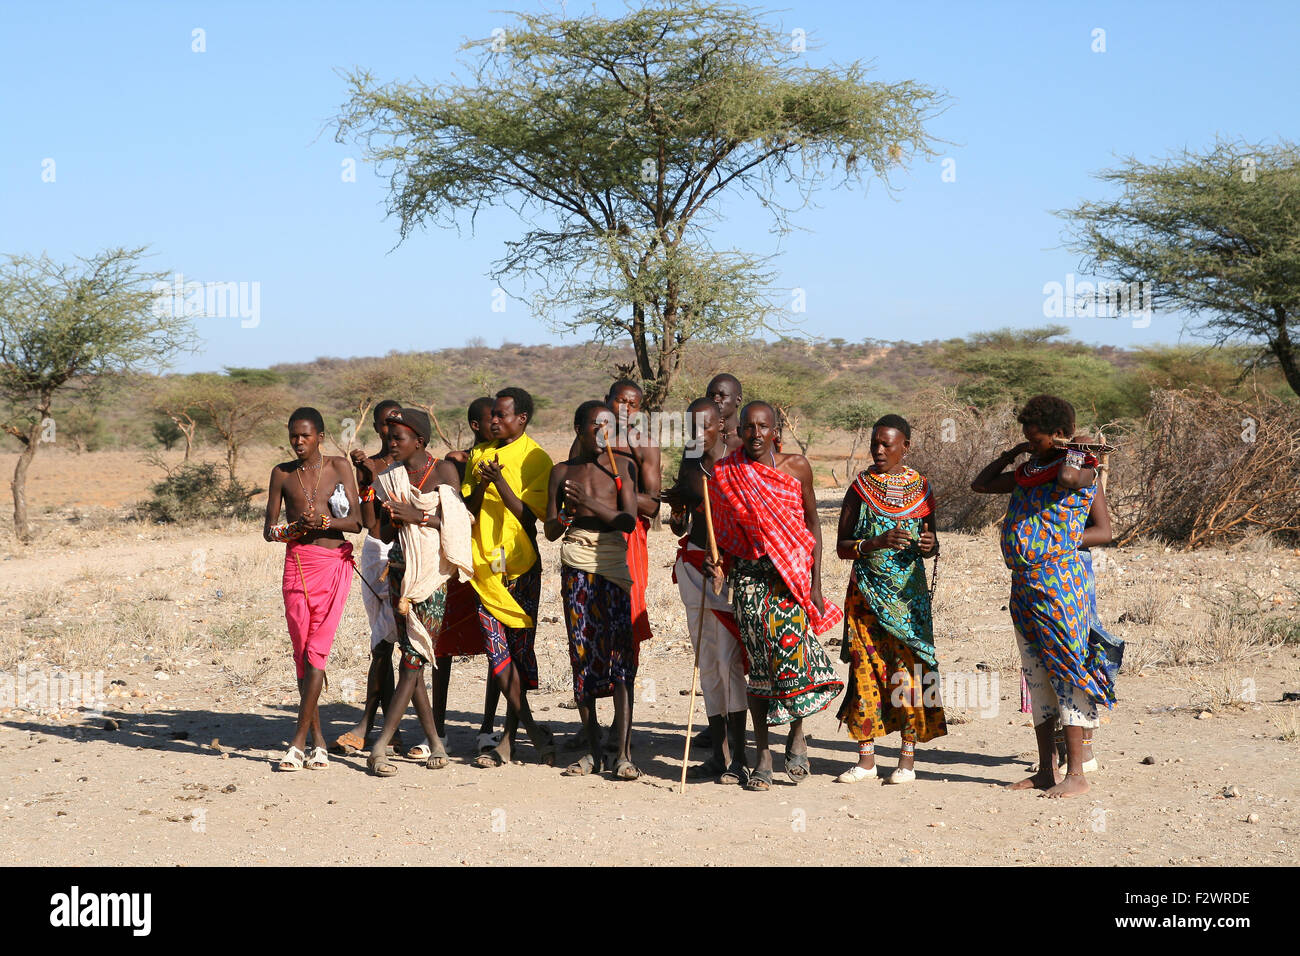 Groupe de personnes d'Afrique non identifié à partir de la tribu Samburu posant pour un portrait Banque D'Images